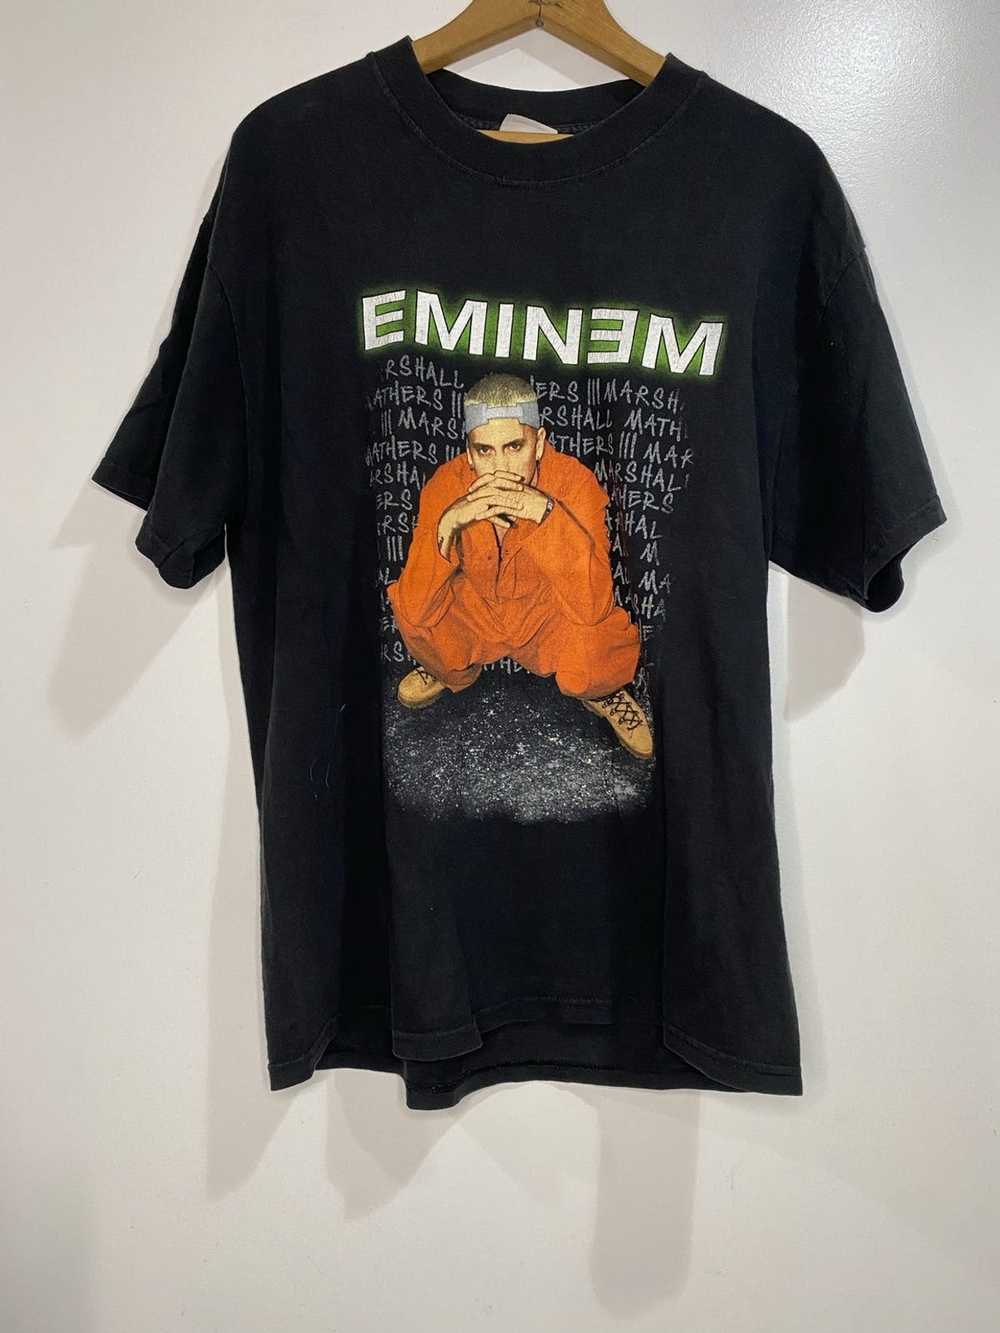 Vintage Vintage Eminem criminal tee size large - image 1